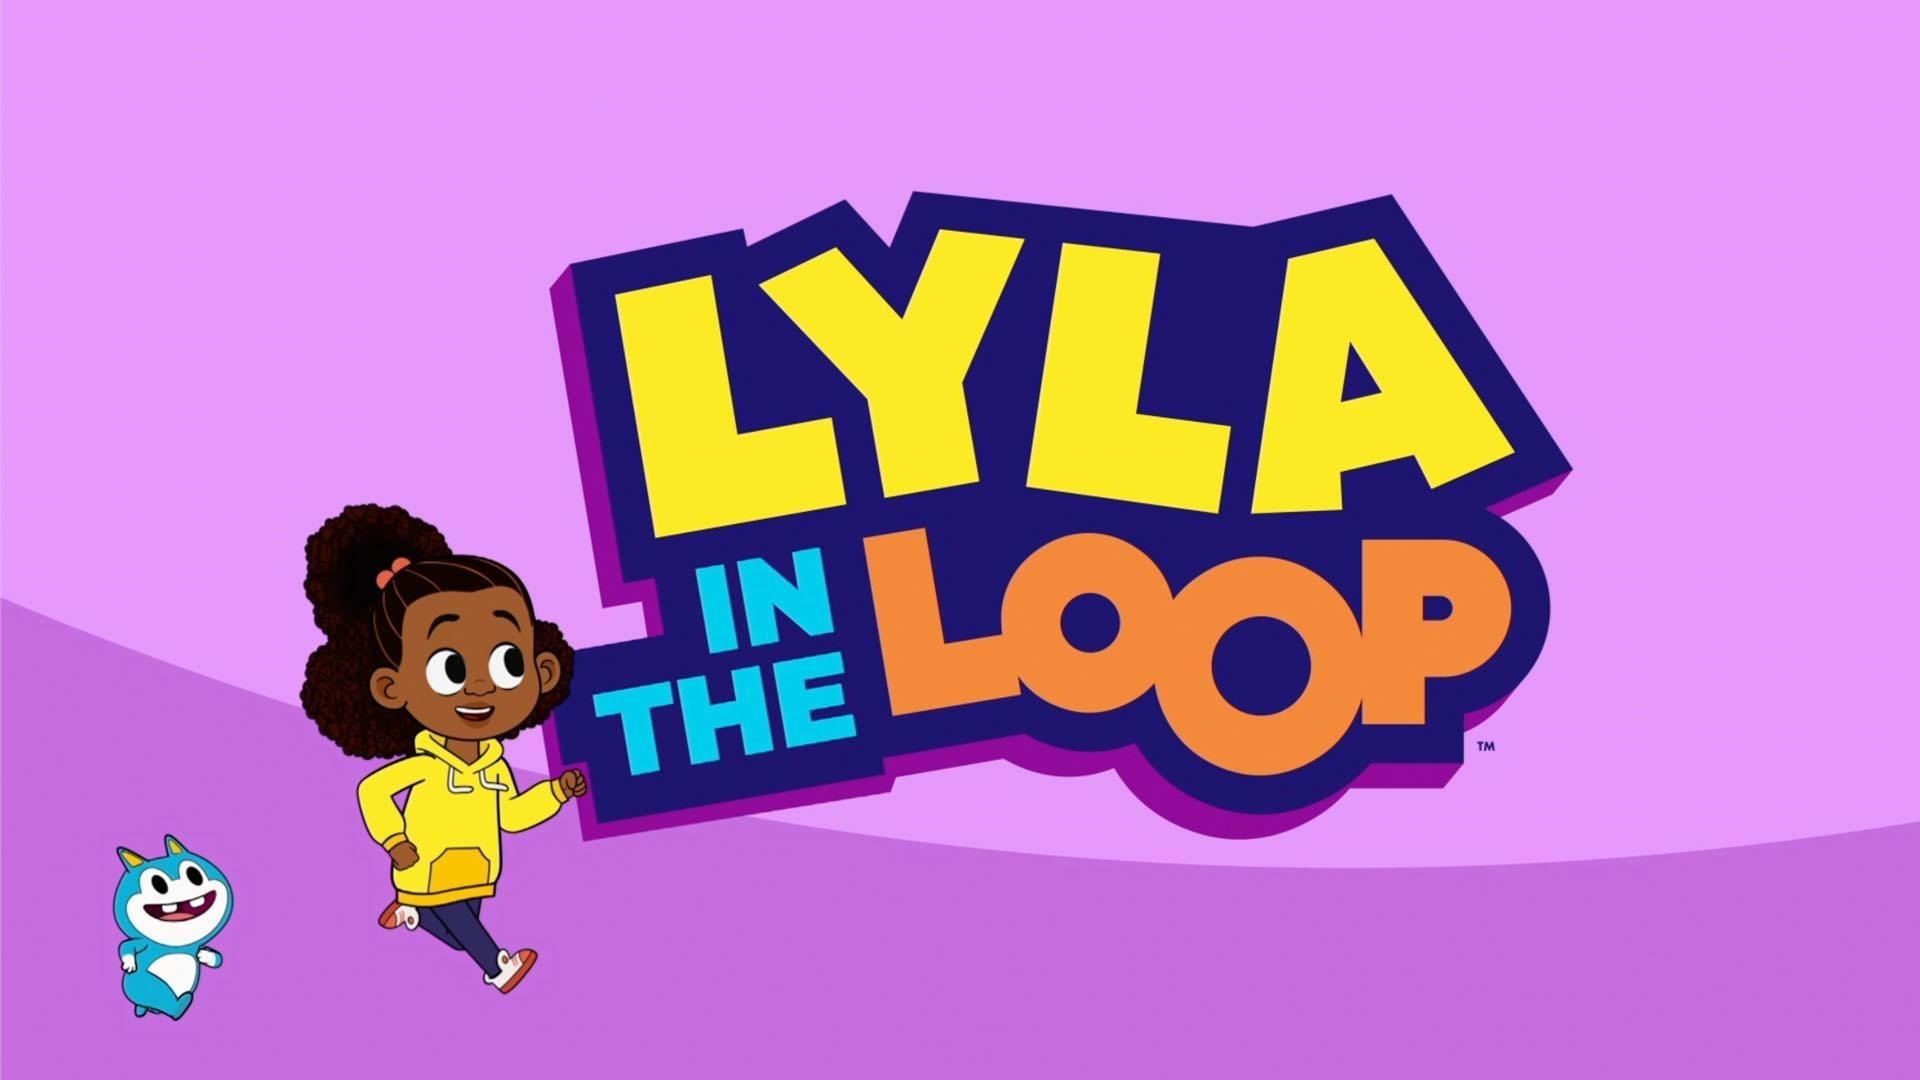 Lyla in the Loop